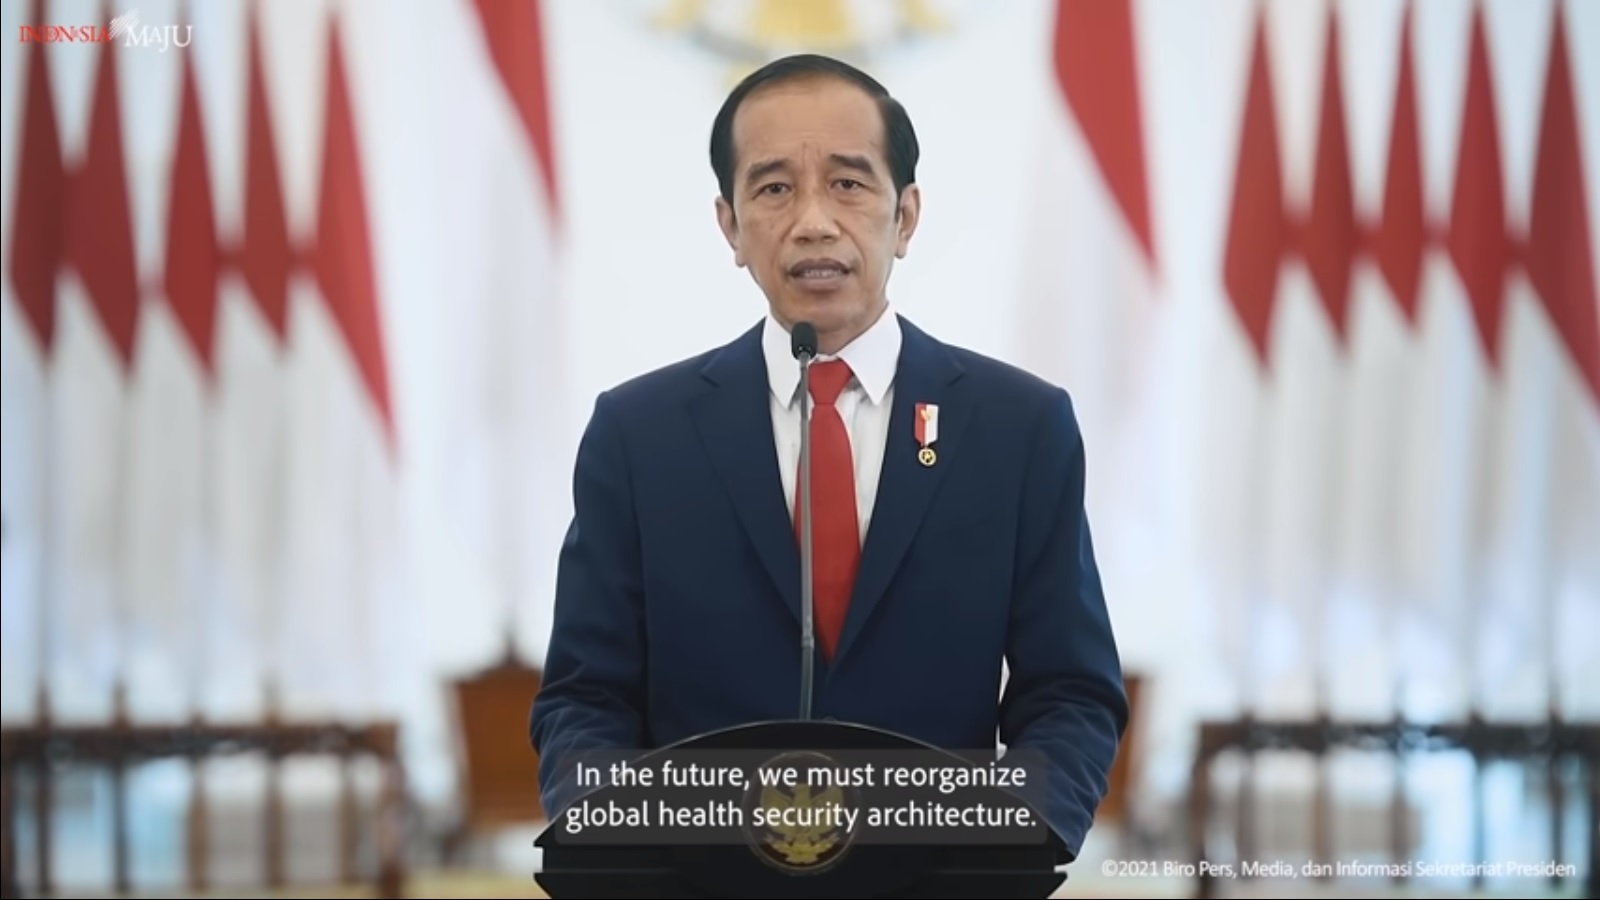 Pidato Presiden Joko Widodo pada Sidang Majelis Umum ke-76 PBB